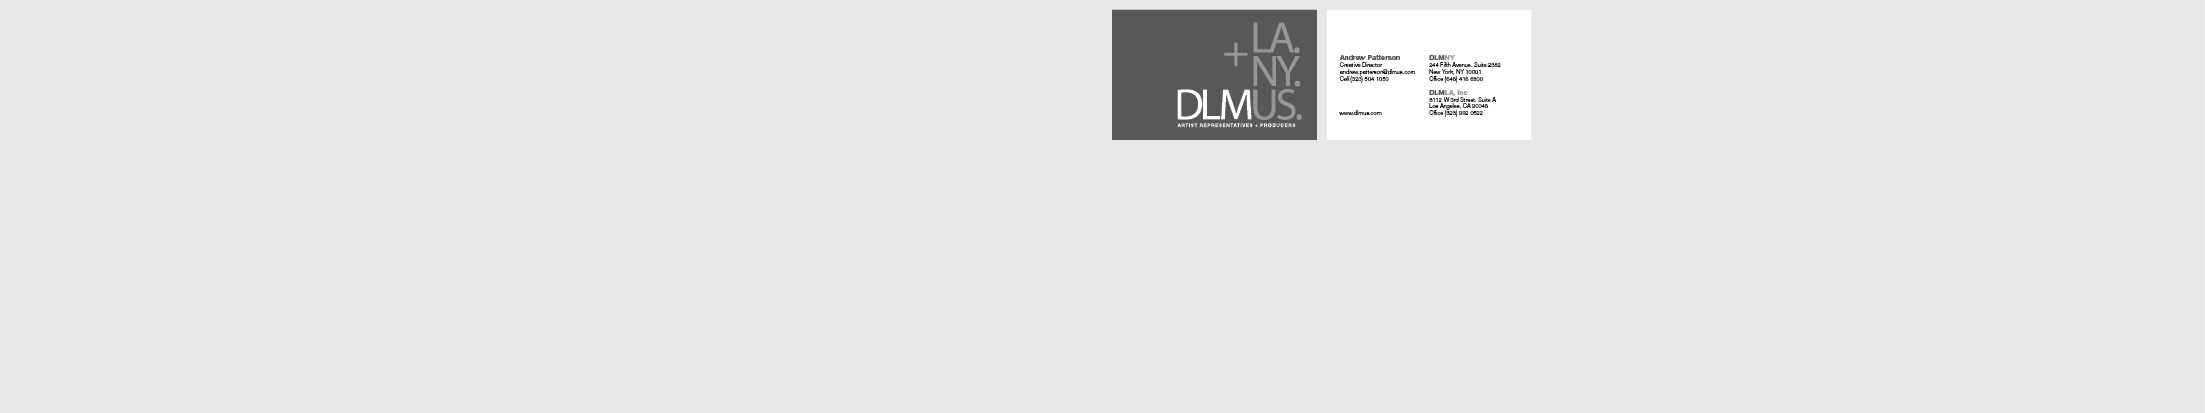 DLMUS 2015 Branding Package